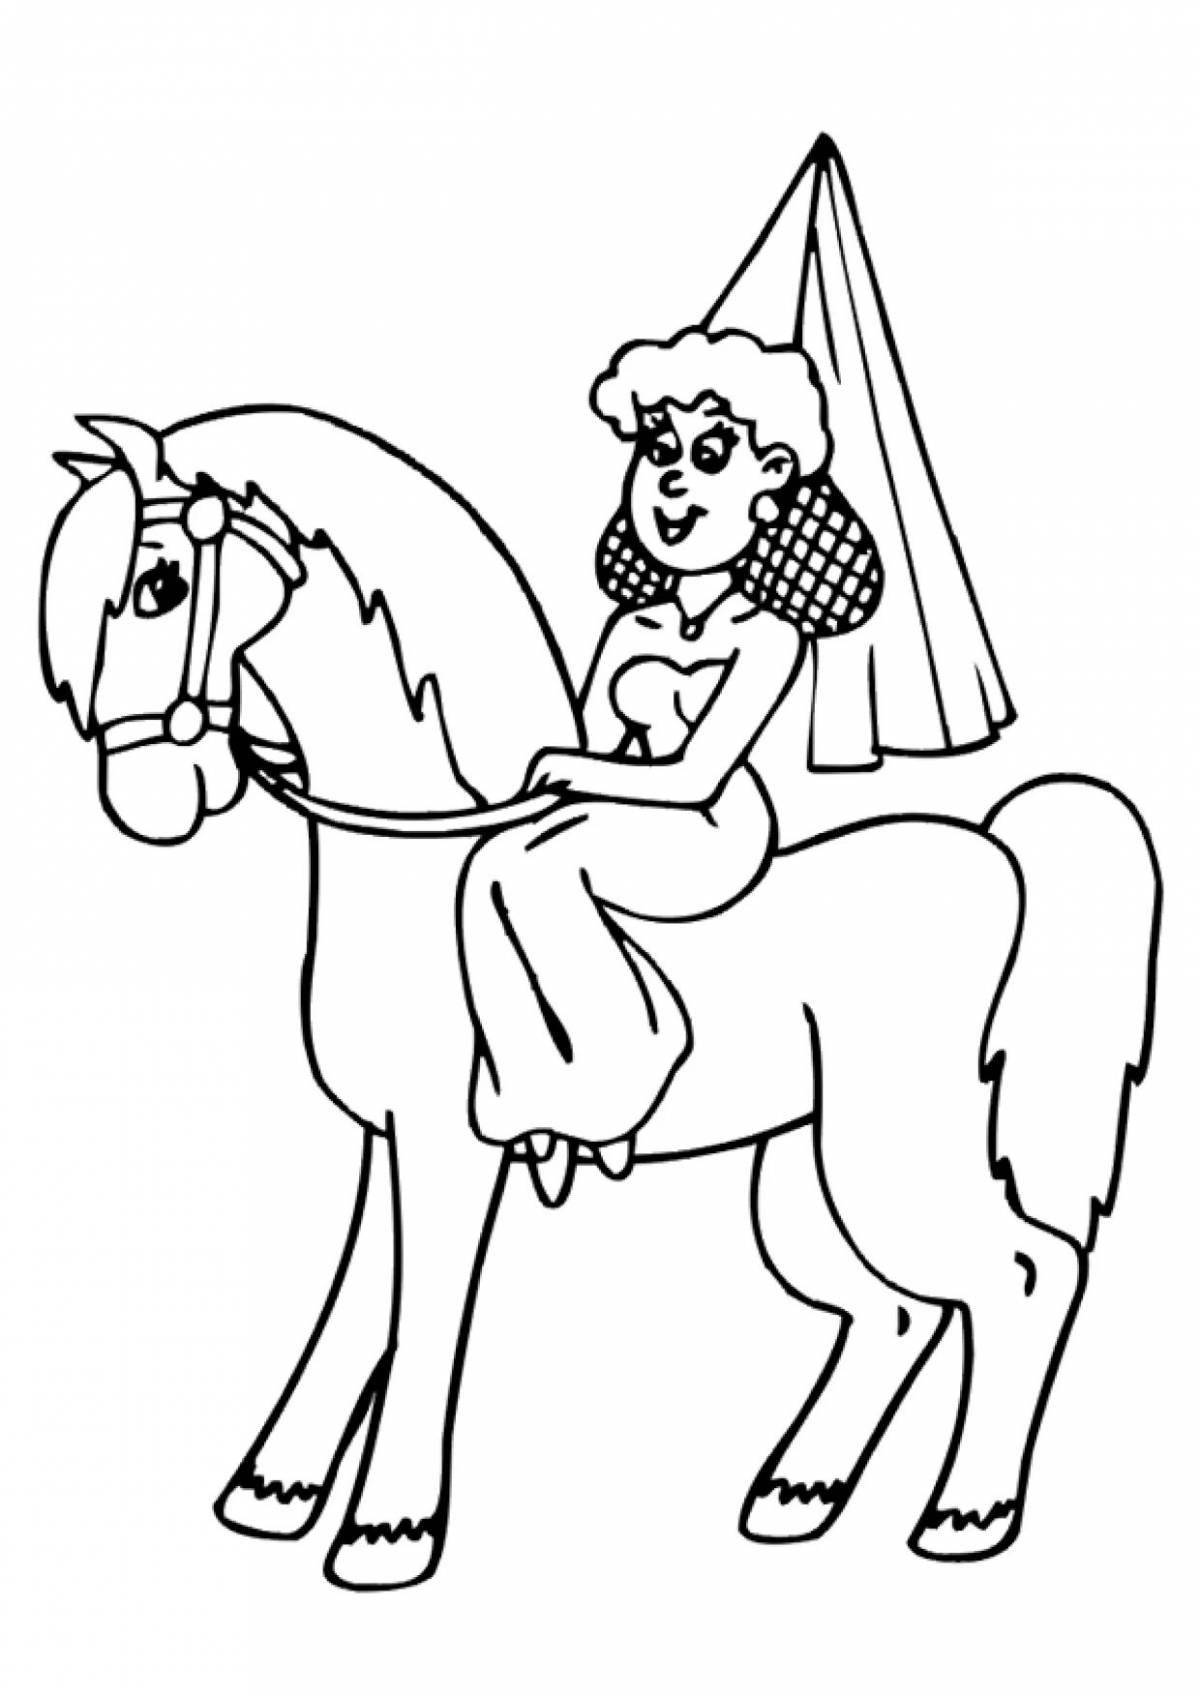 Королевская раскраска лошадь и принцесса